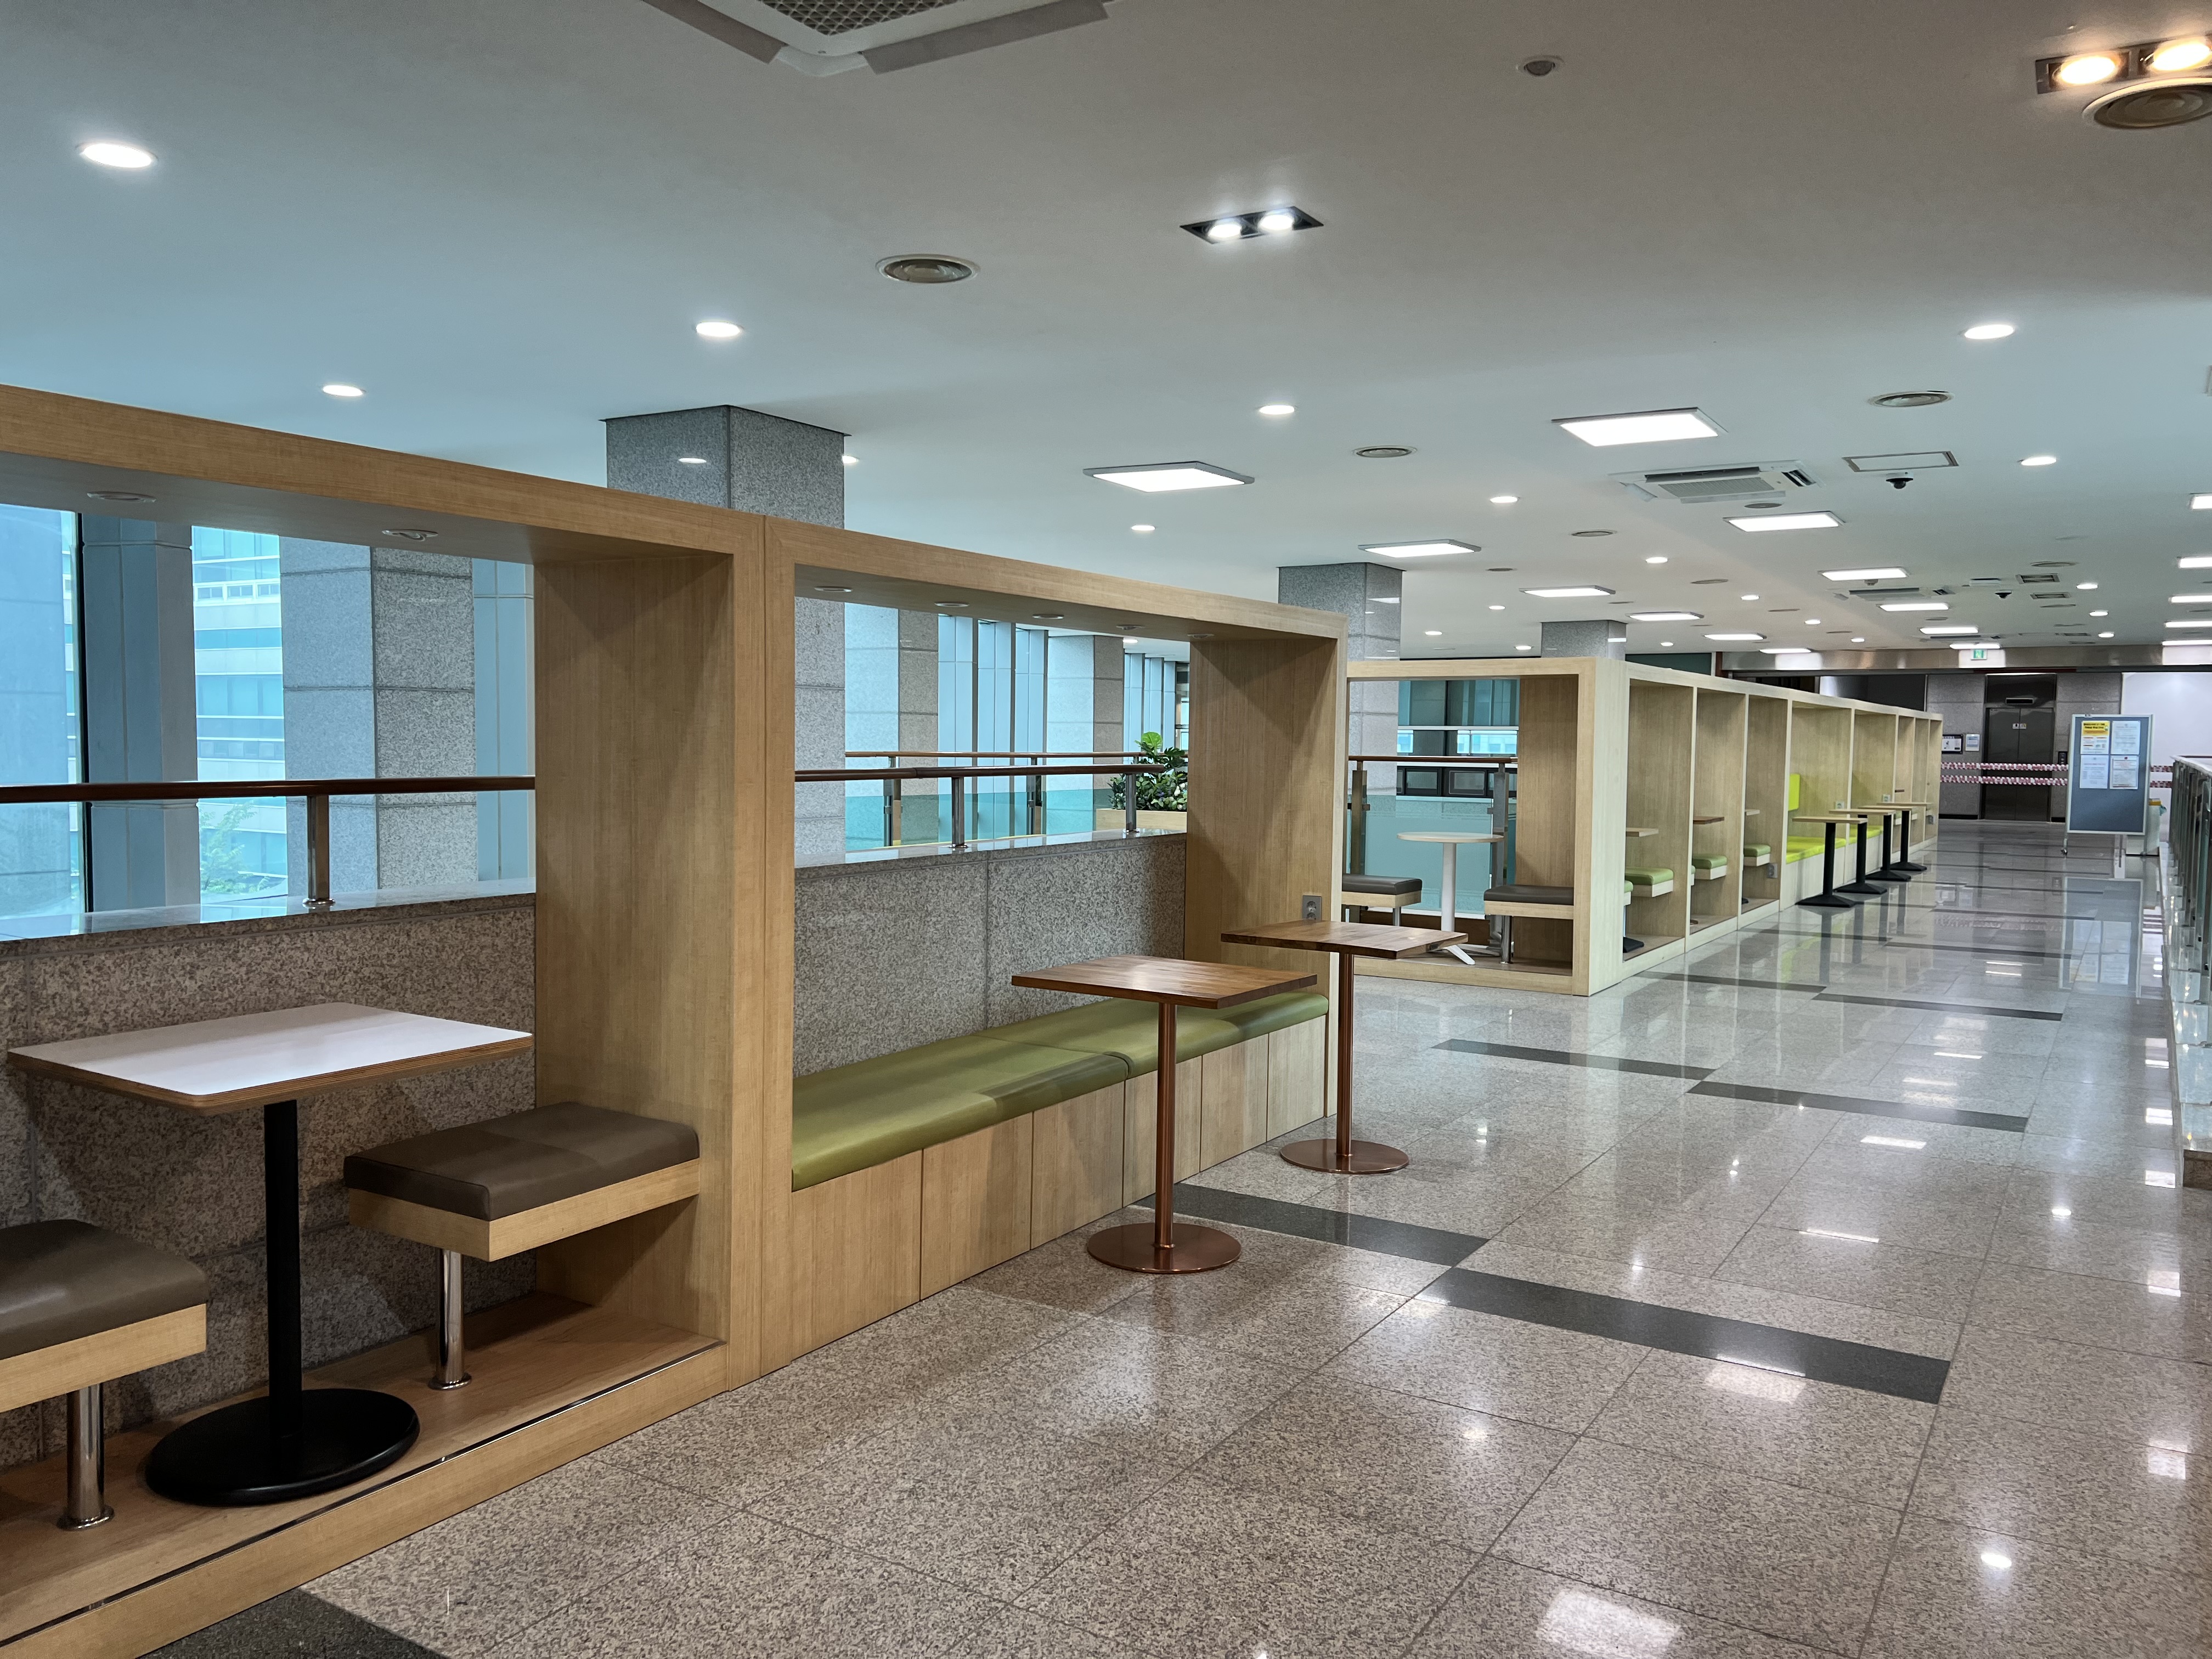 釜慶大学図書館の廊下に新設された学生交流スペース